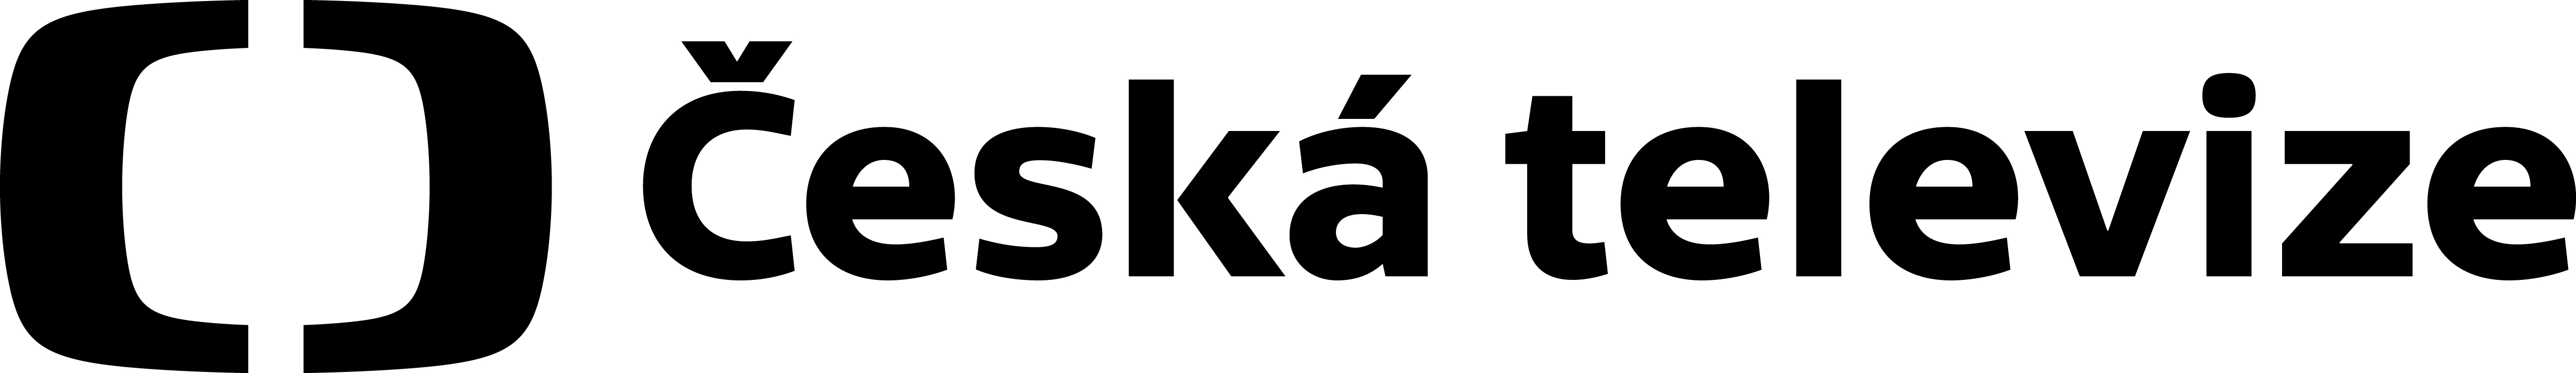 Český rozhlas – logo